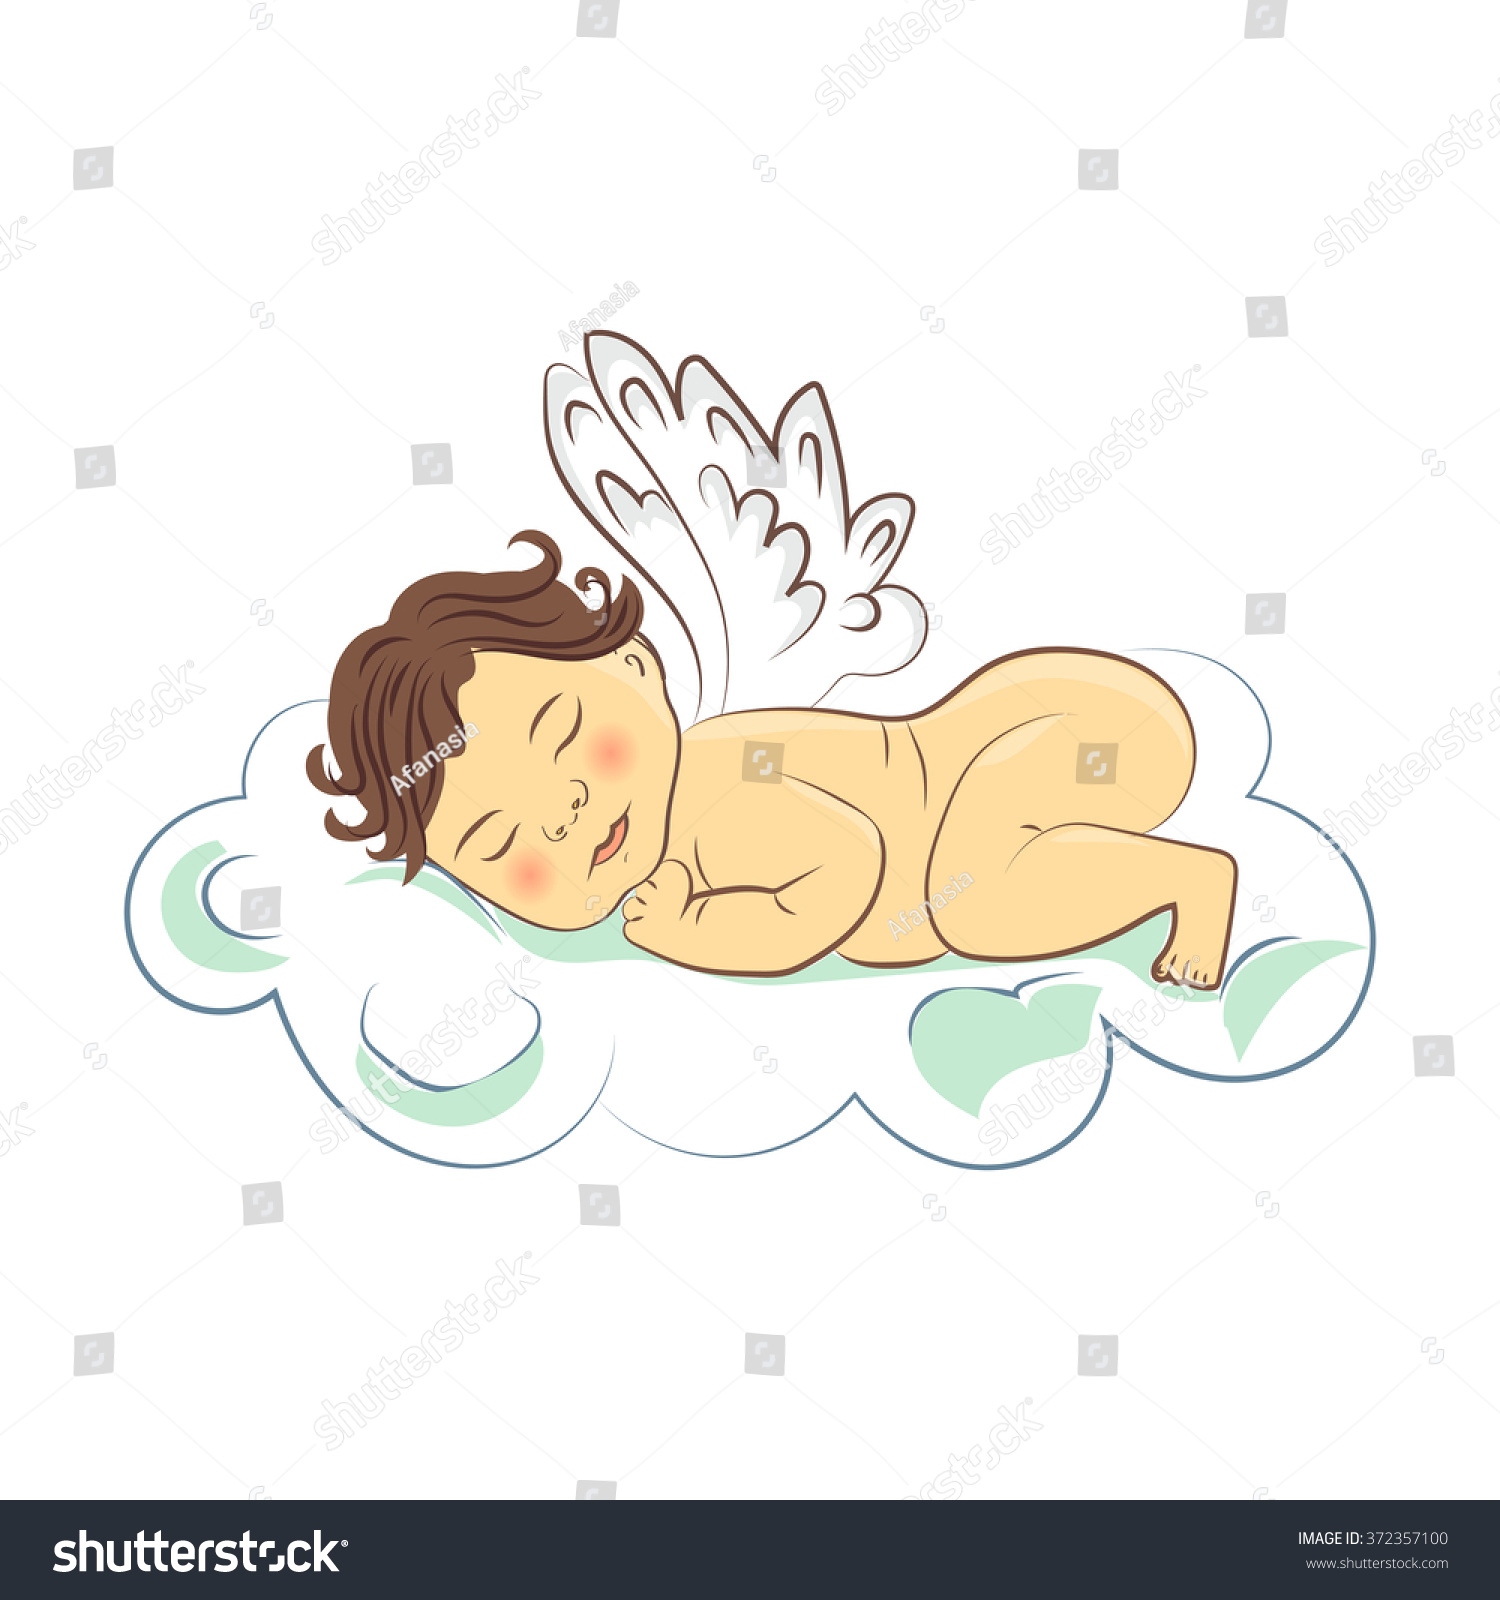 Download Sleeping Baby Angel On Cloud Vector Stock Vector 372357100 ...